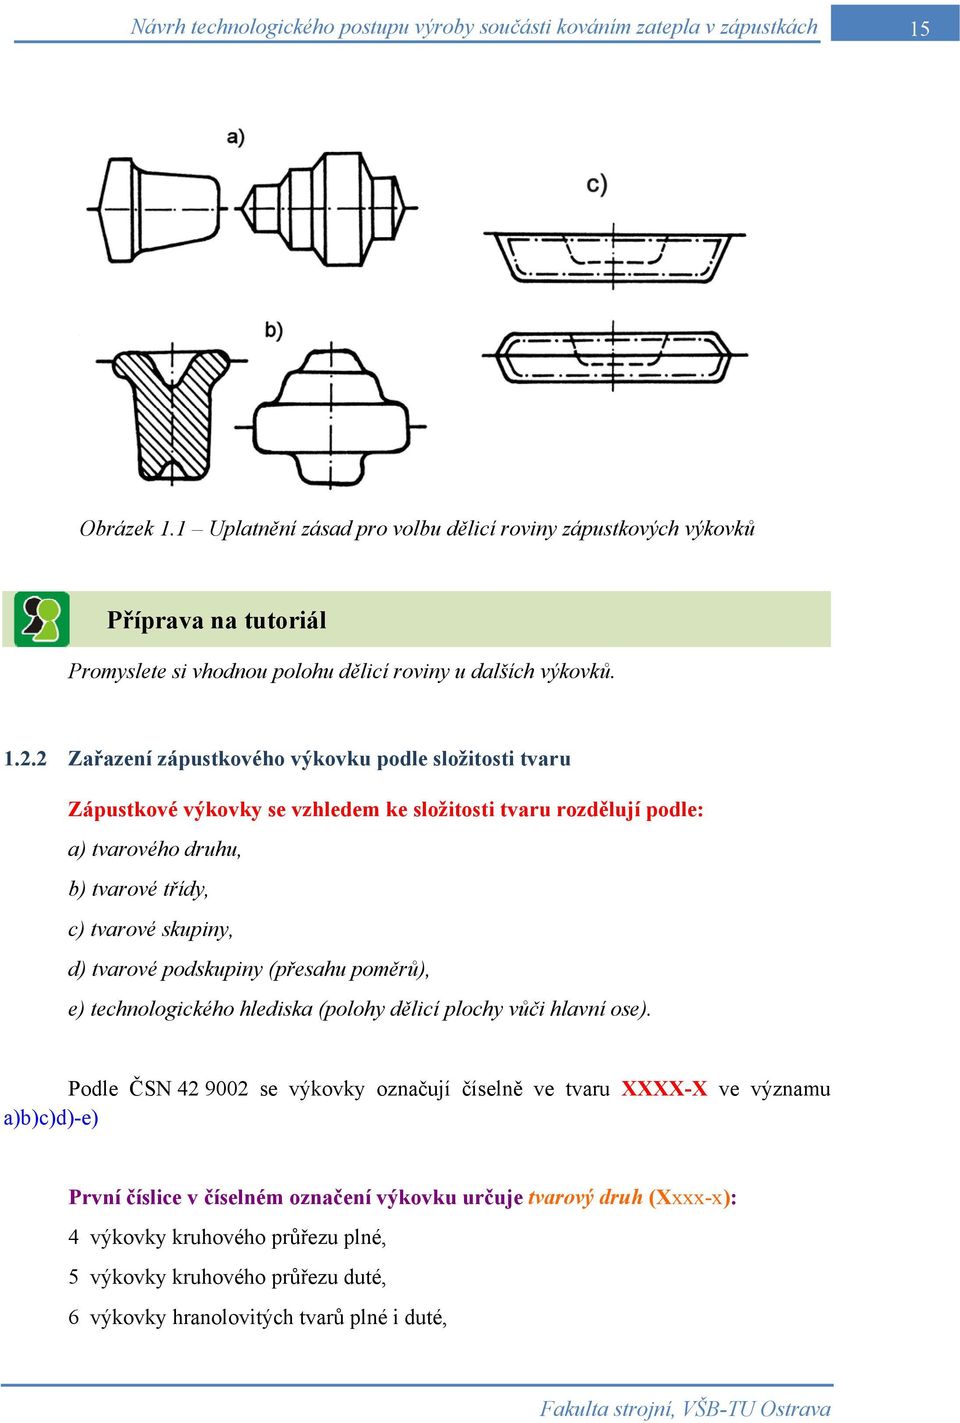 2 Zařazení zápustkového výkovku podle složitosti tvaru Zápustkové výkovky se vzhledem ke složitosti tvaru rozdělují podle: a) tvarového druhu, b) tvarové třídy, c) tvarové skupiny, d) tvarové